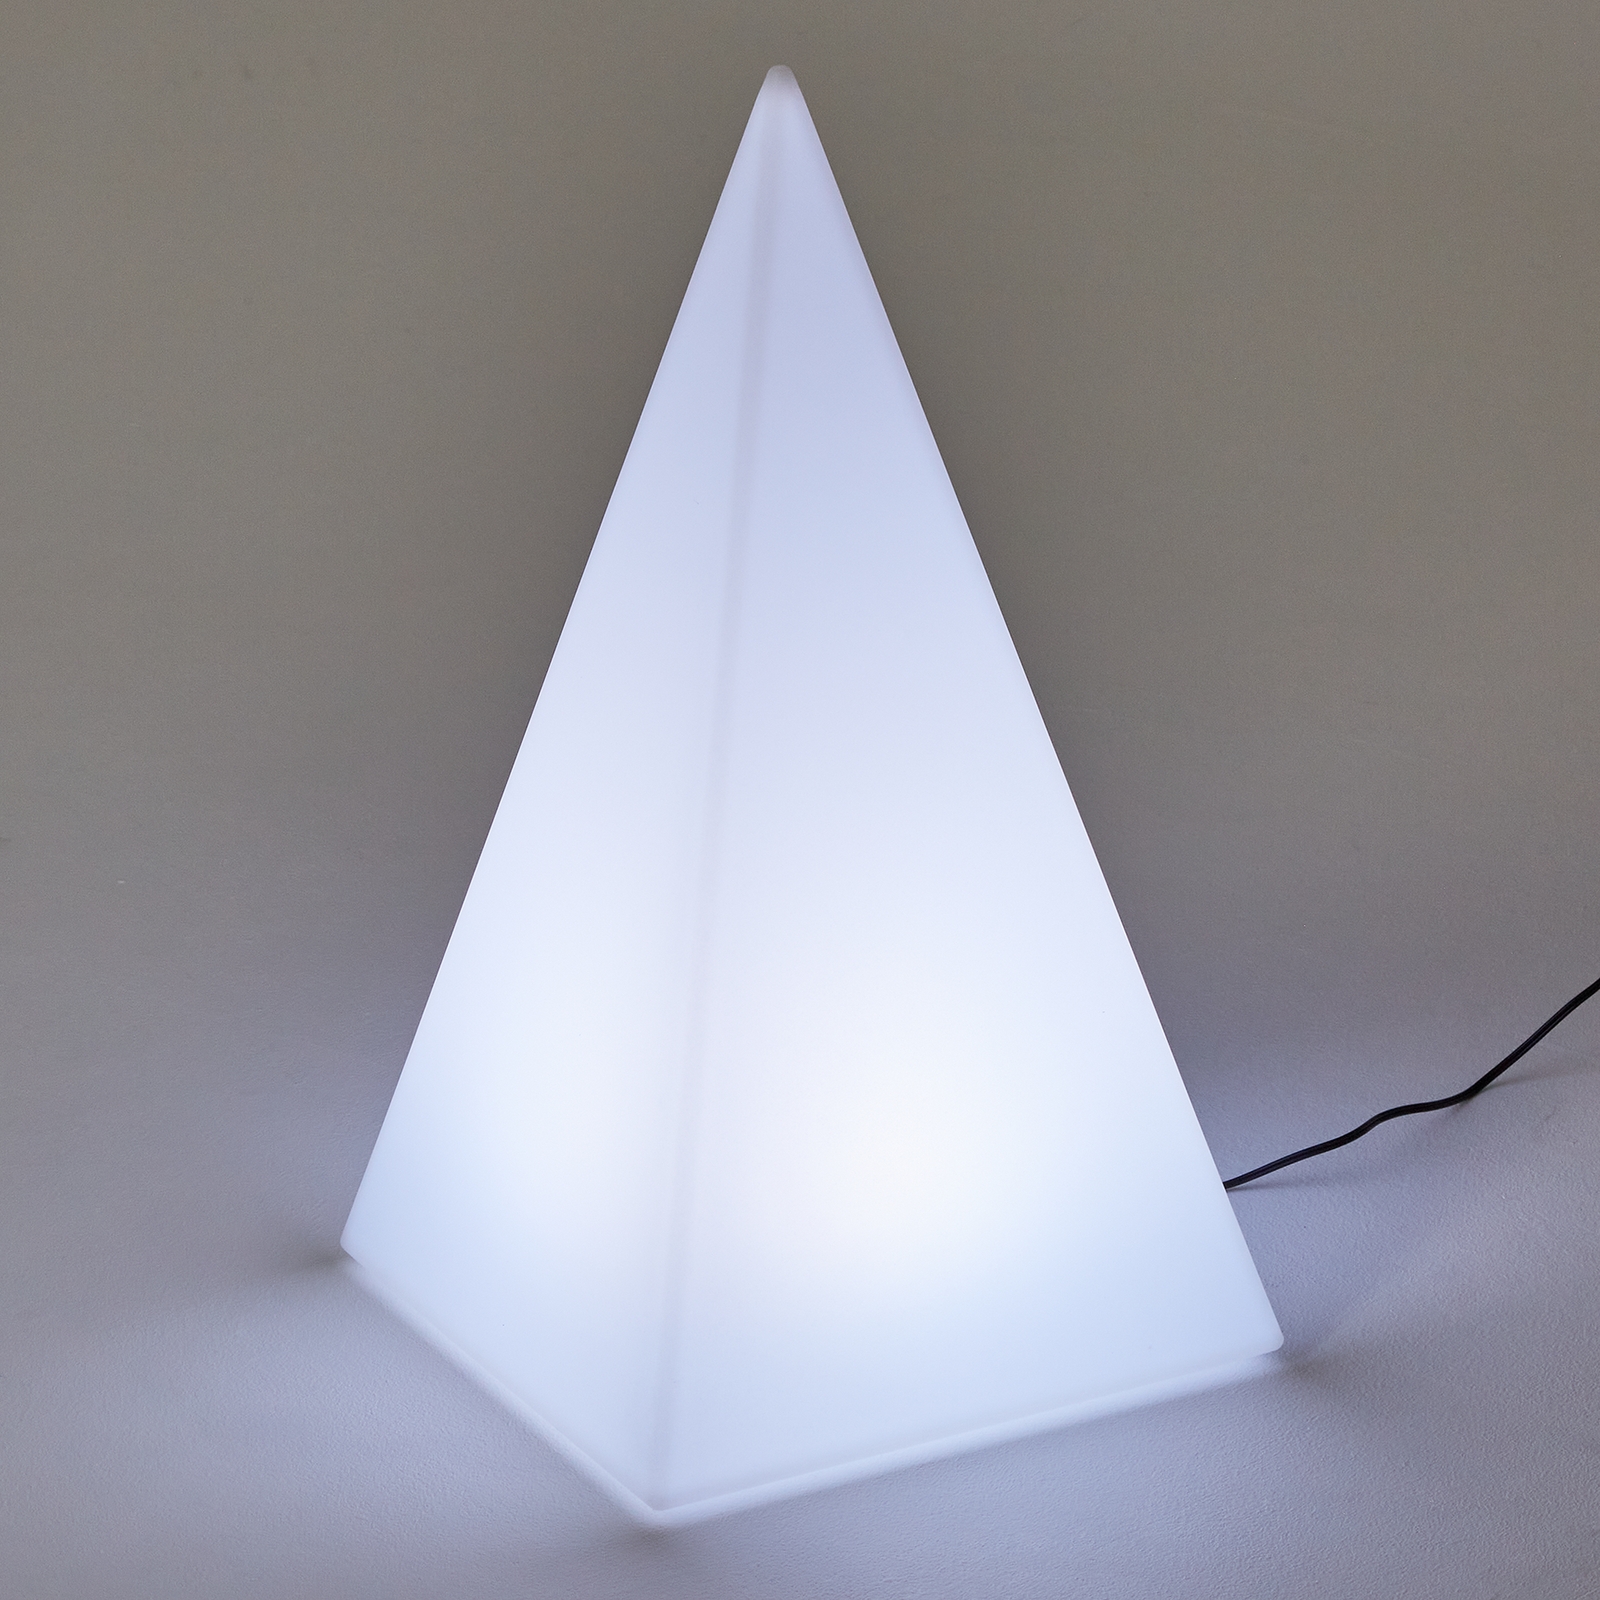 Light Up Sensory Pyramid